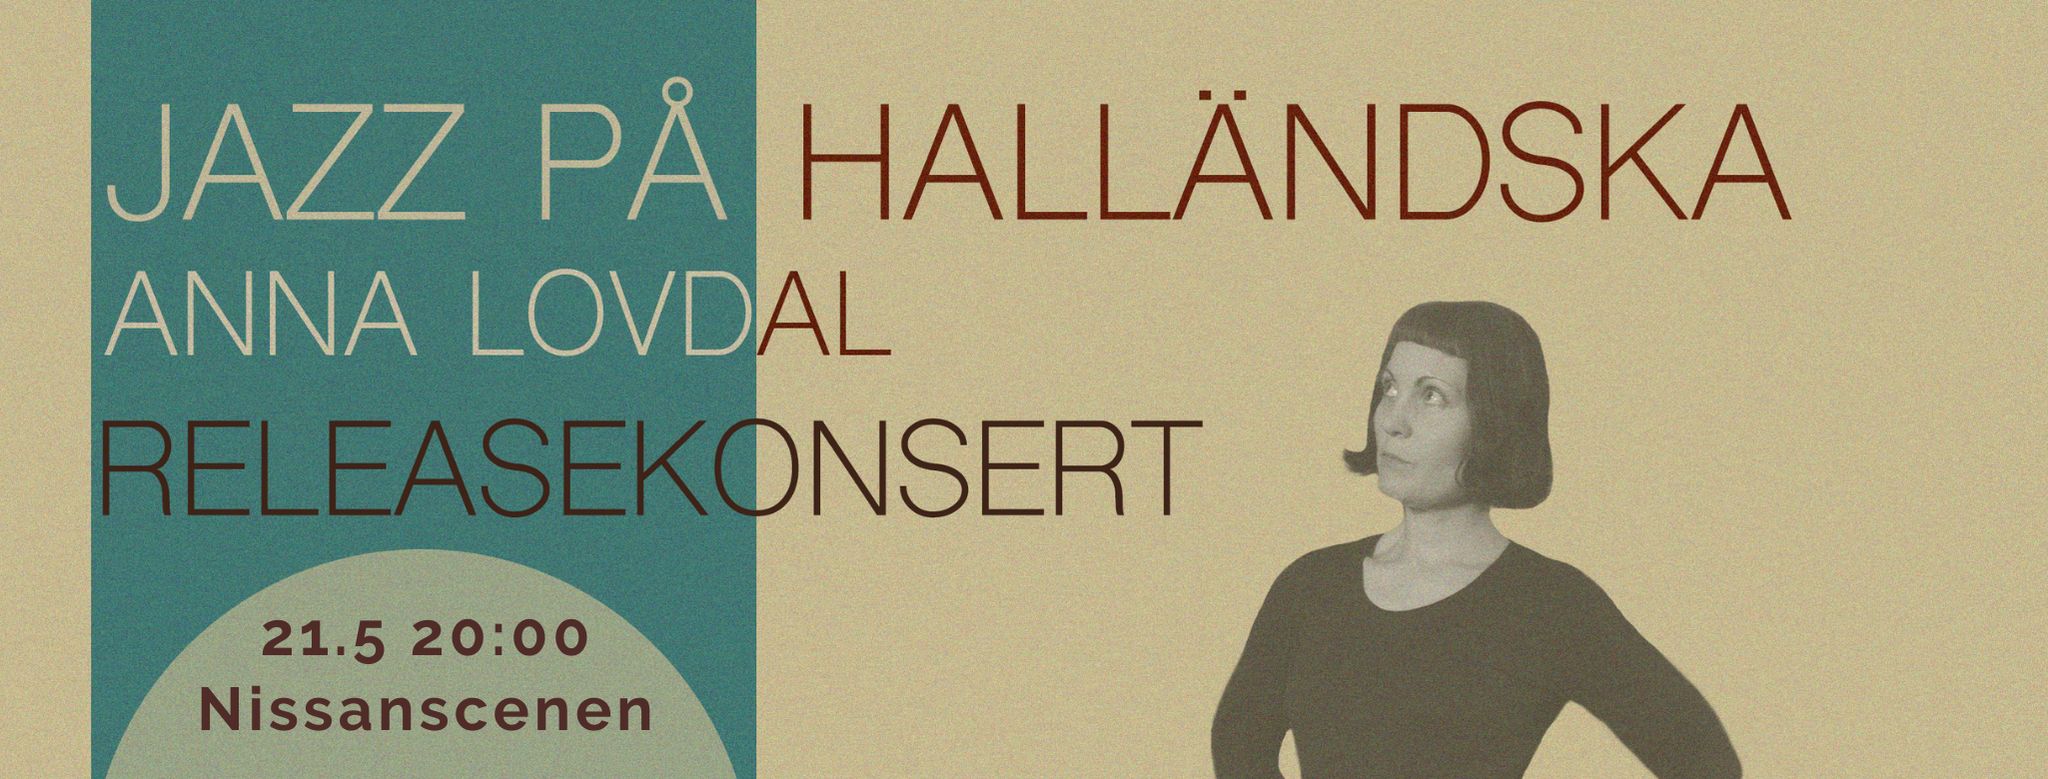 Bildbeskrivning saknas för evenemanget: Anna Lovdal -Releasekonsert